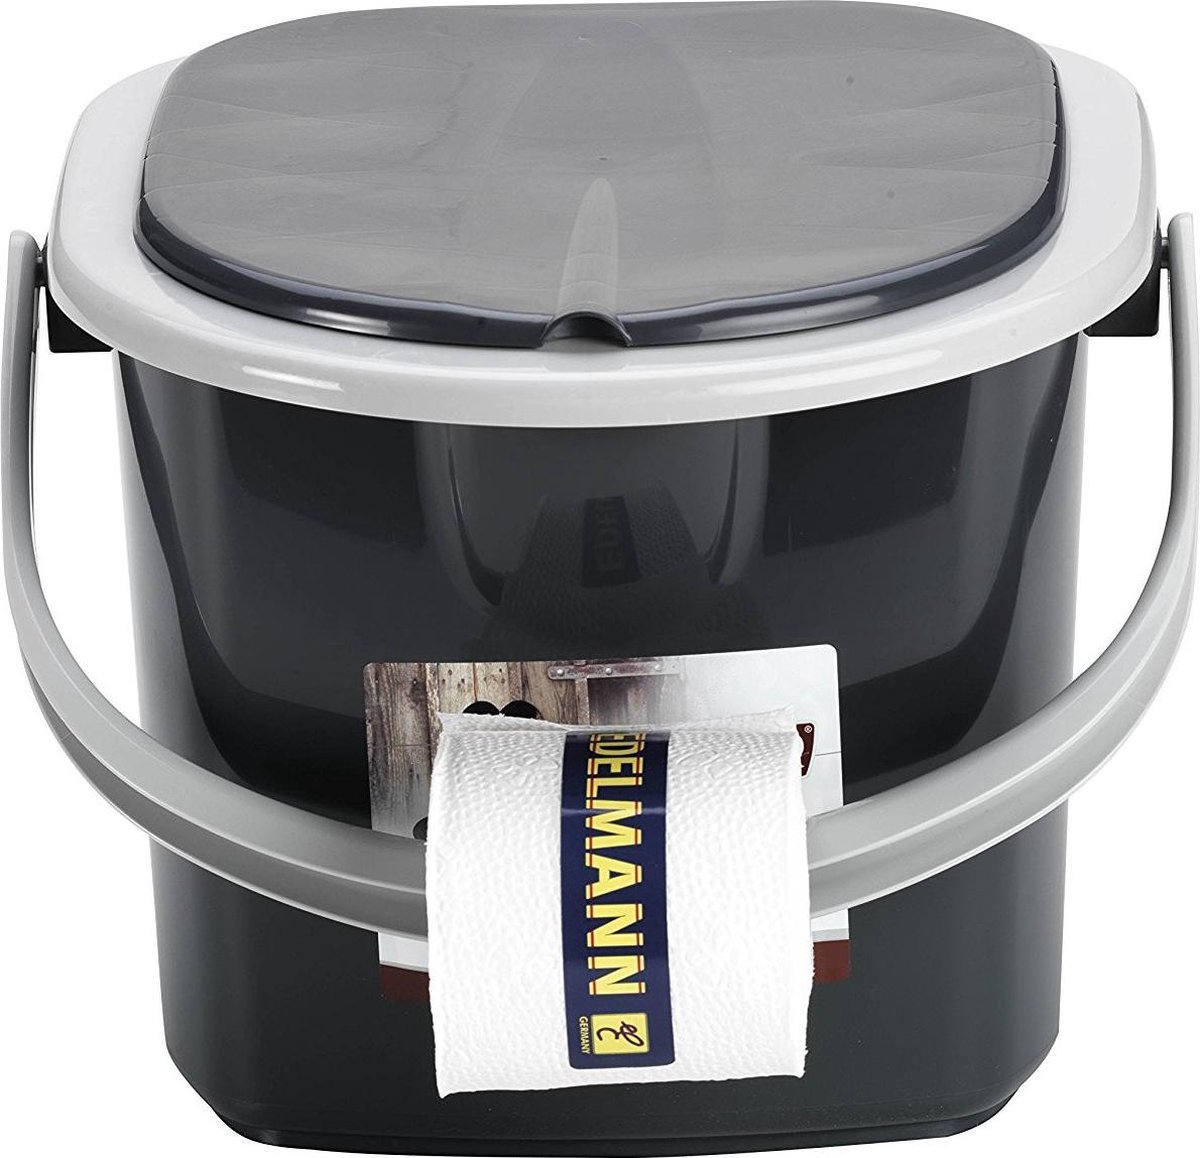 Branq Toiletemmer Draagbaar met Deksel - 15,5L - Antraciet - Branq